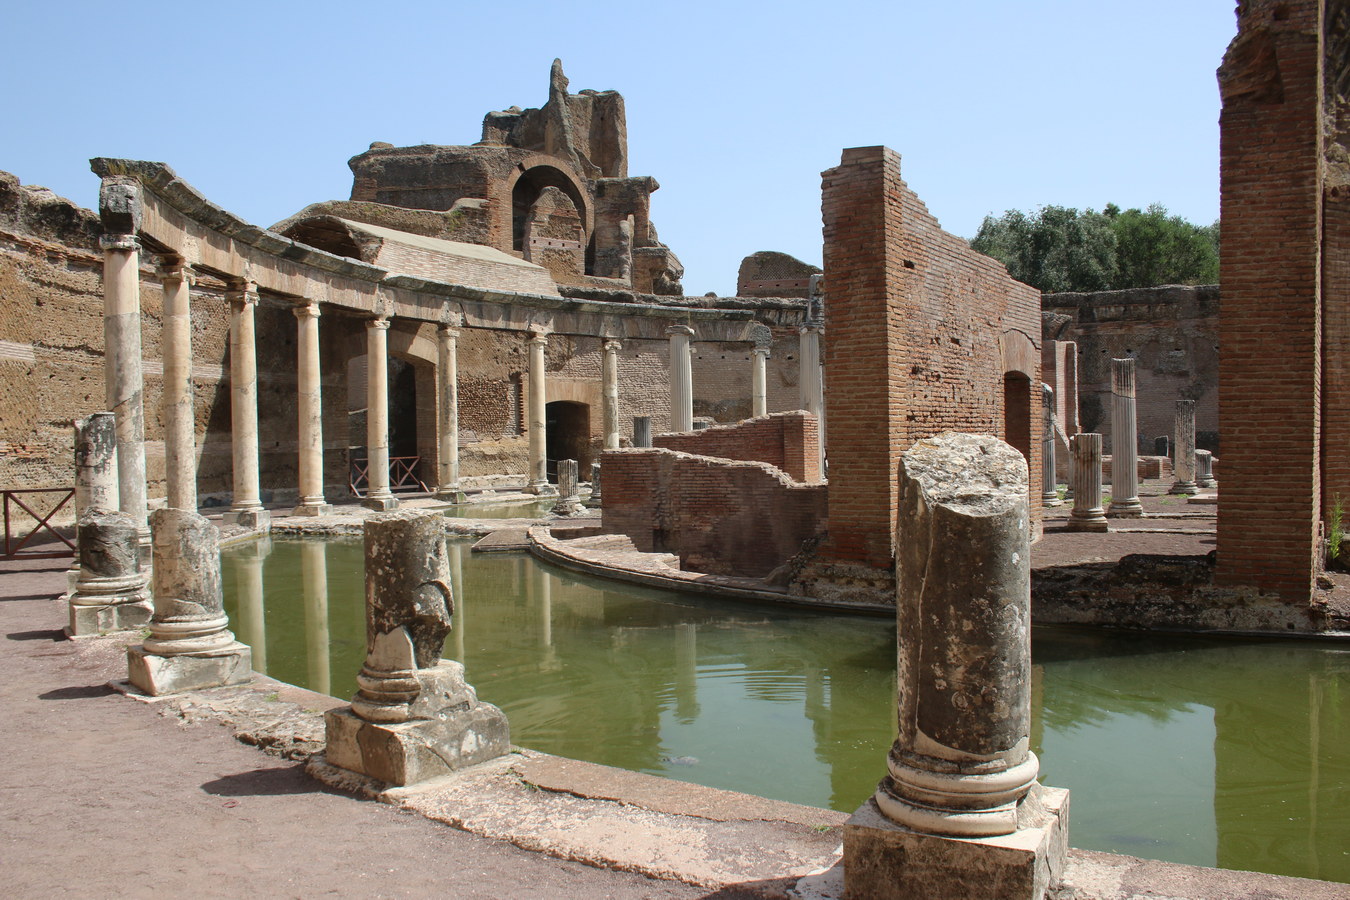 Chùm ảnh: Tàn tích khu dinh thự hoành tráng của hoàng đế La Mã Hadrian